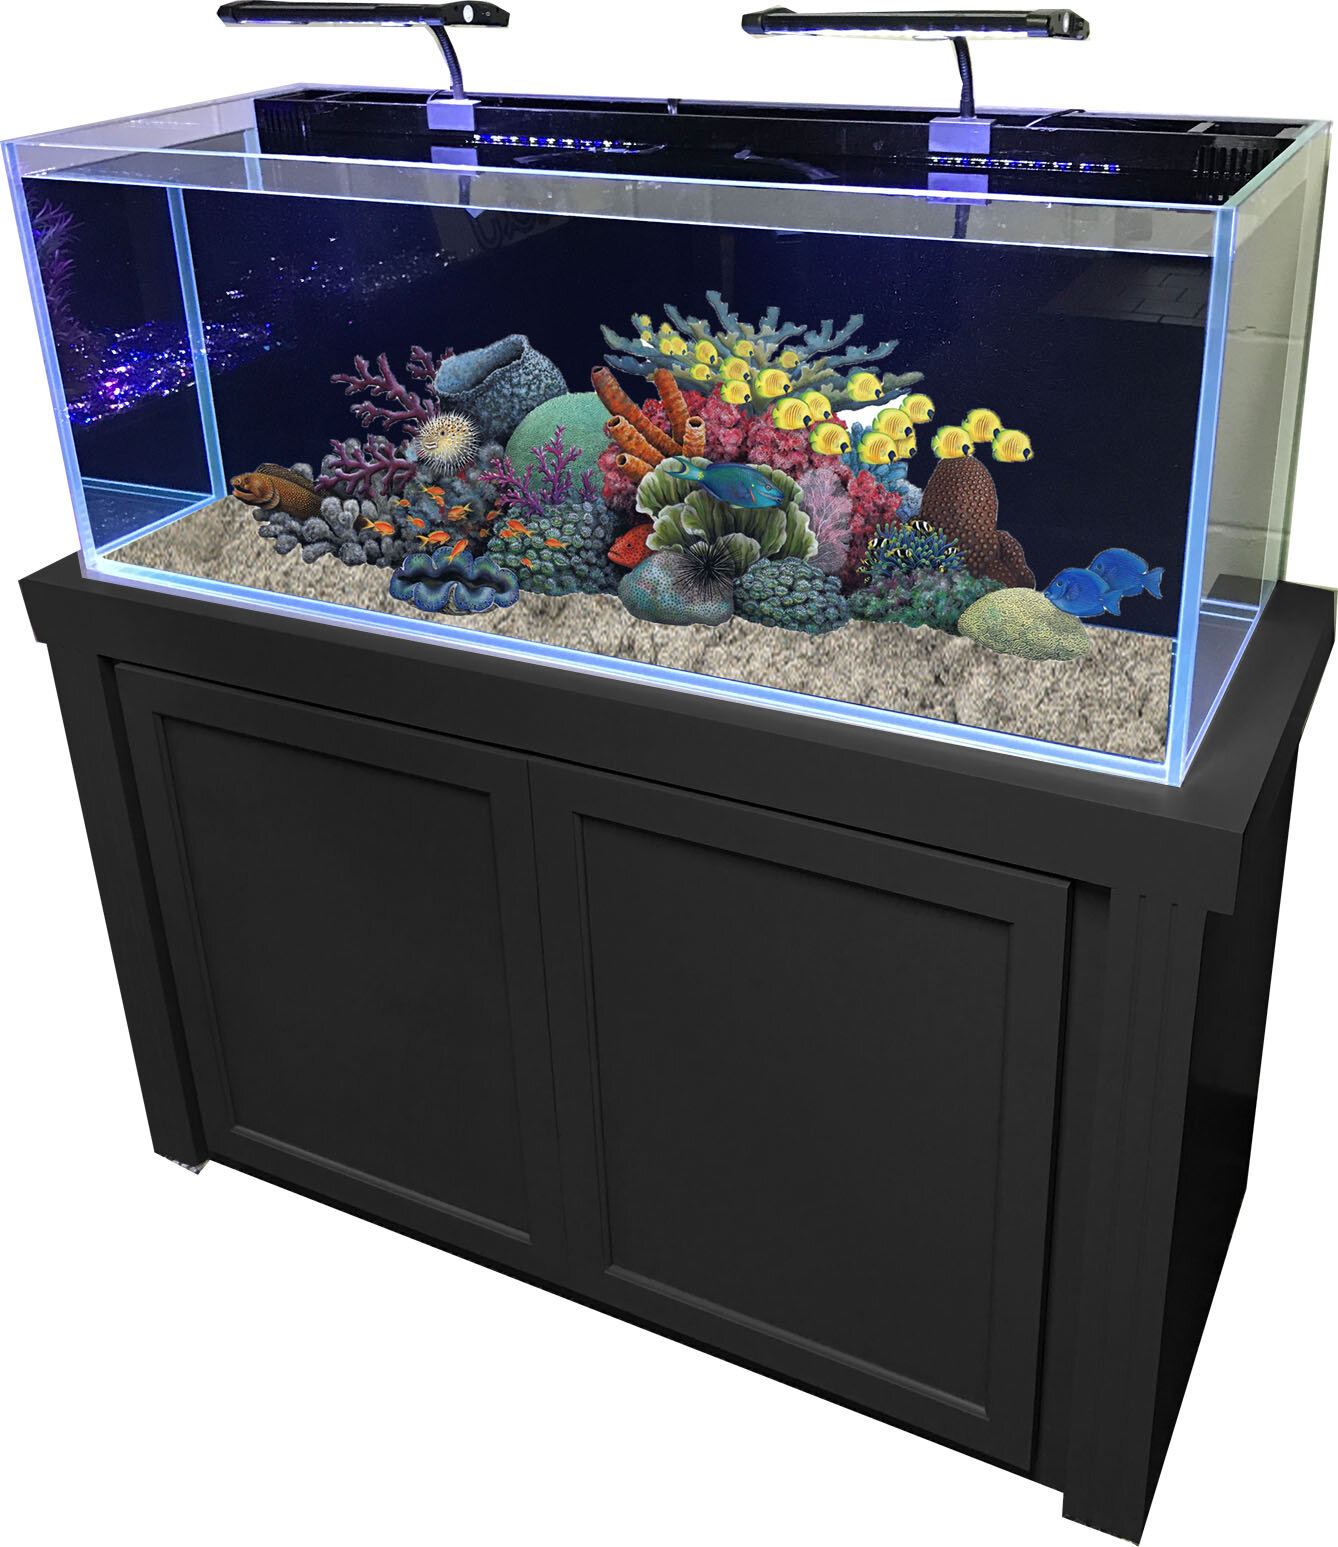 RJ Enterprises 60 Gallon Rimless Glass Combo Aquarium Kit ...